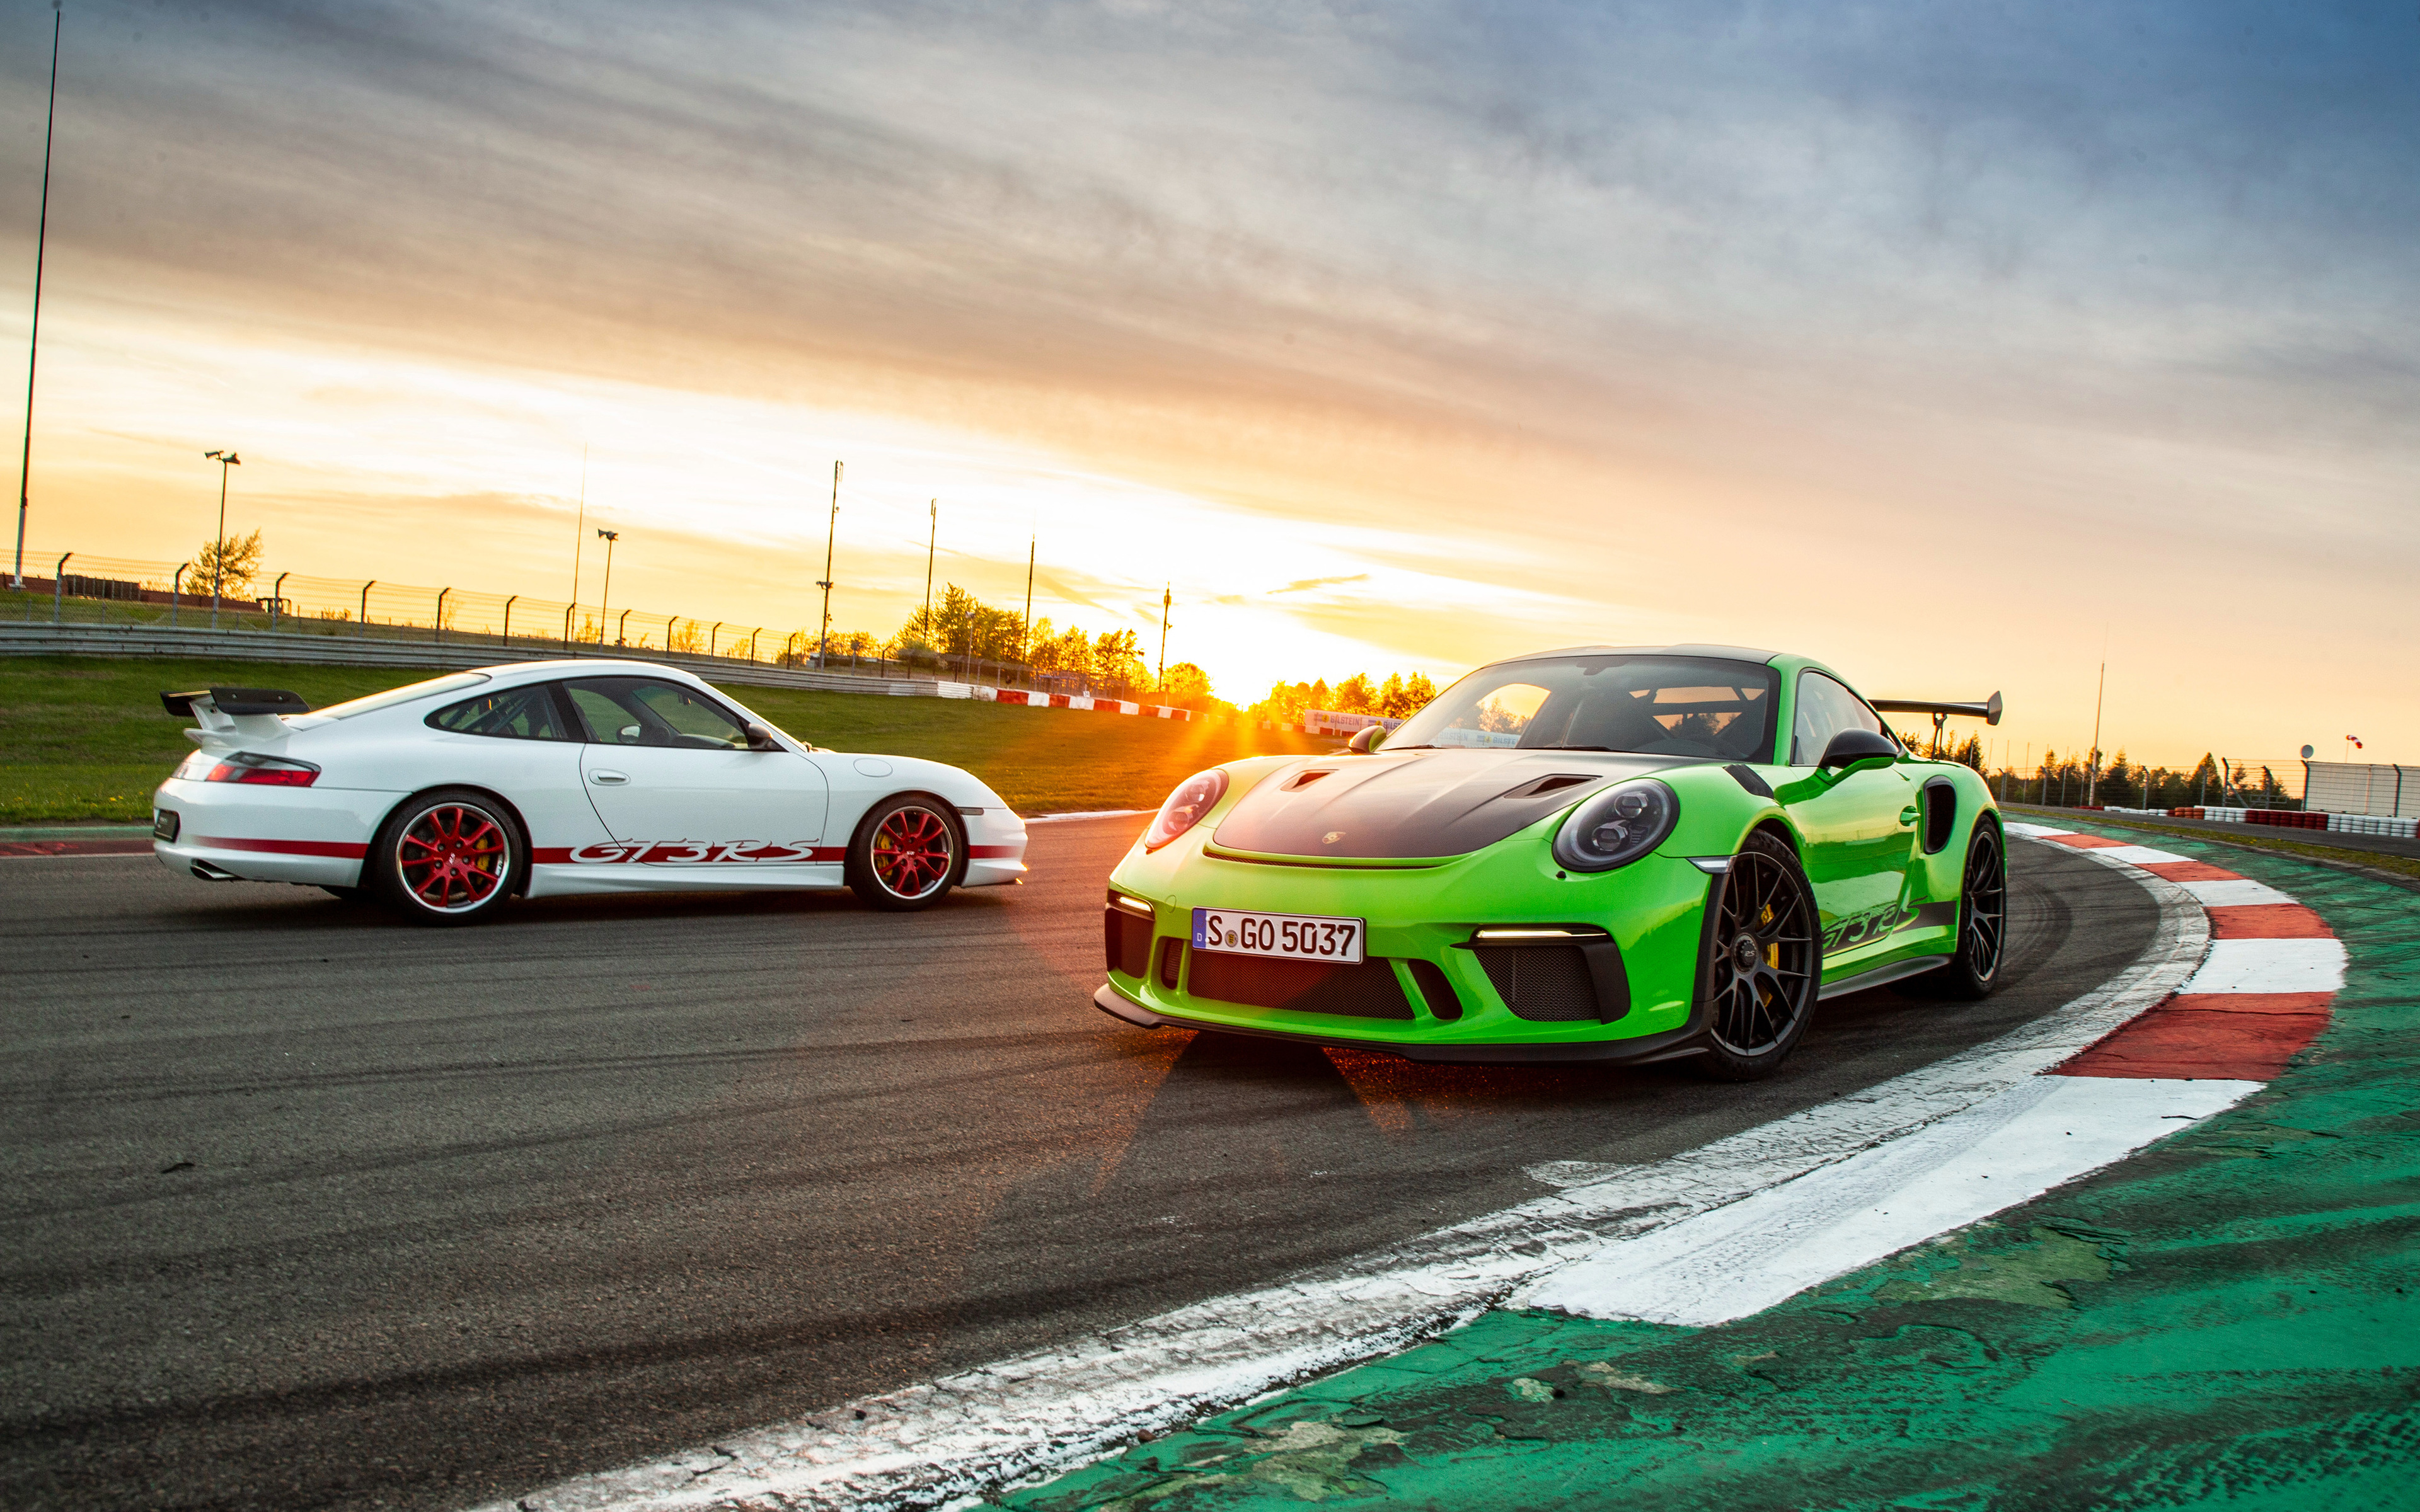 4k, Porsche 911 Gt3 Rs, Raceway, 2019 Cars, Supercars, - Porsche 911 Gt3 Rs Wallpaper 4k - HD Wallpaper 